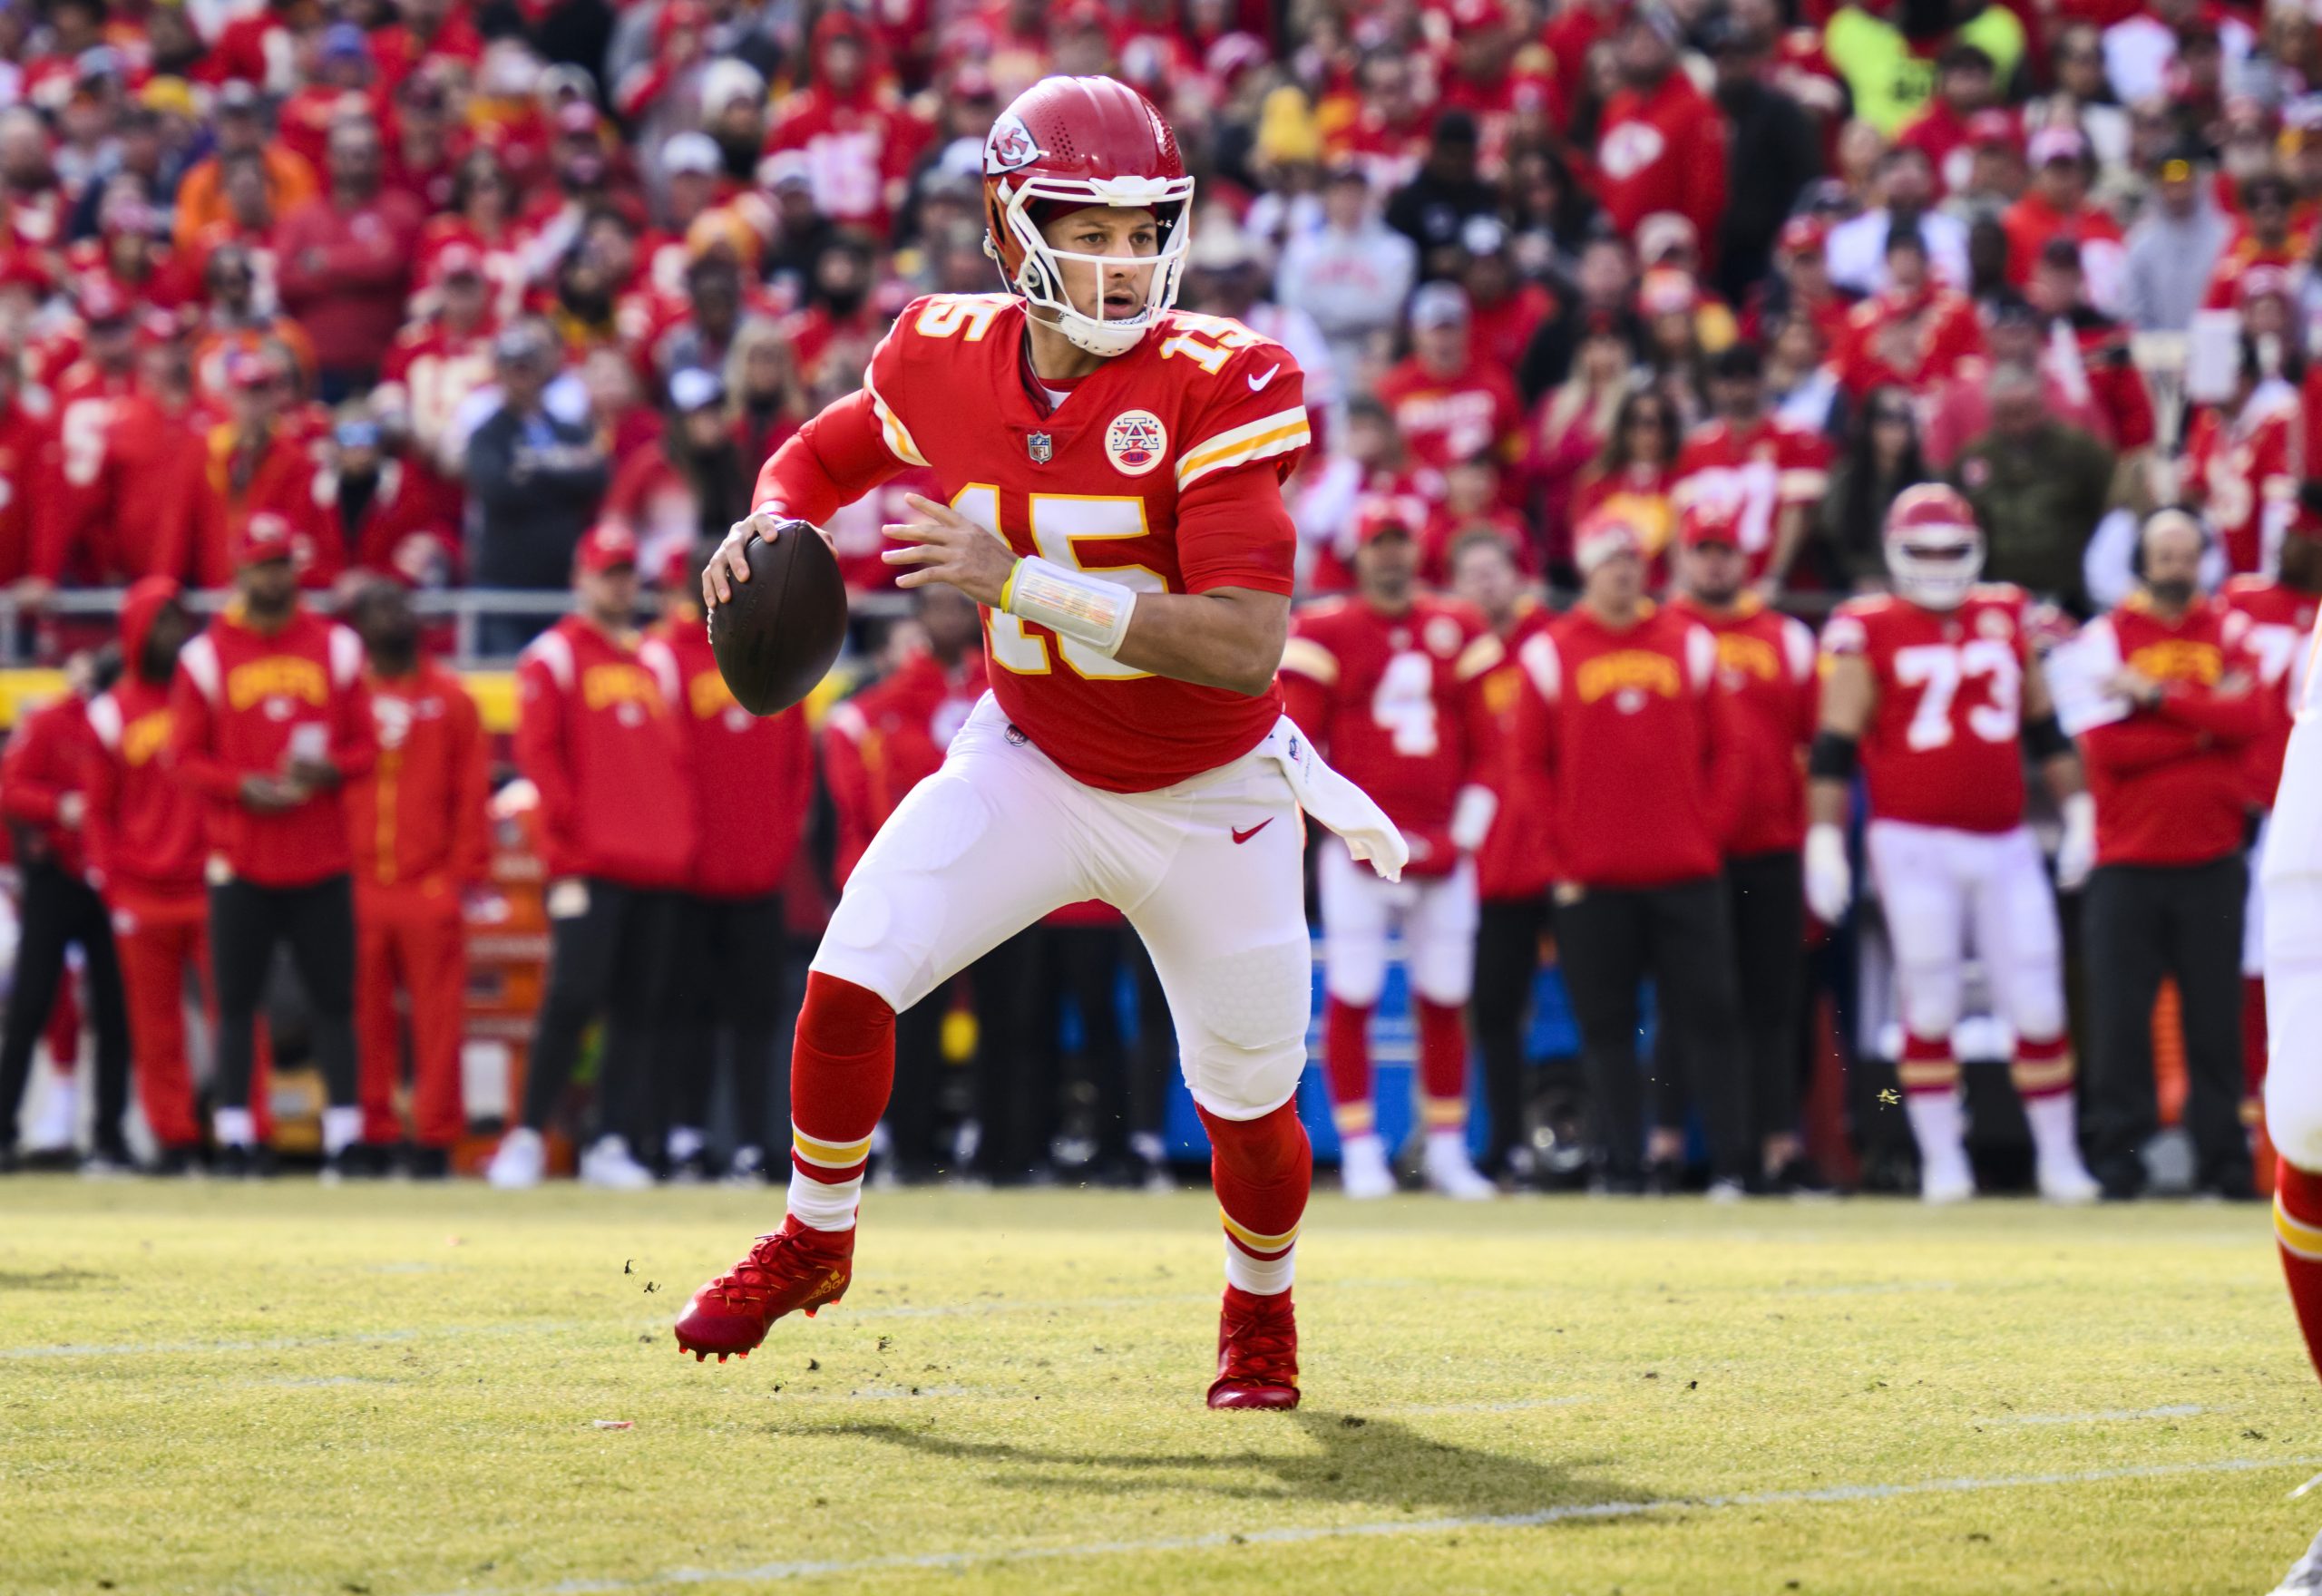 FootballR - NFL - Ein Football-Spieler der Kansas Chiefs, Patrick Mahomes, läuft mit dem Ball während des NFL-Saisonstarts 2023 für eine aufregende Darbietung von Stars und Spektakel.